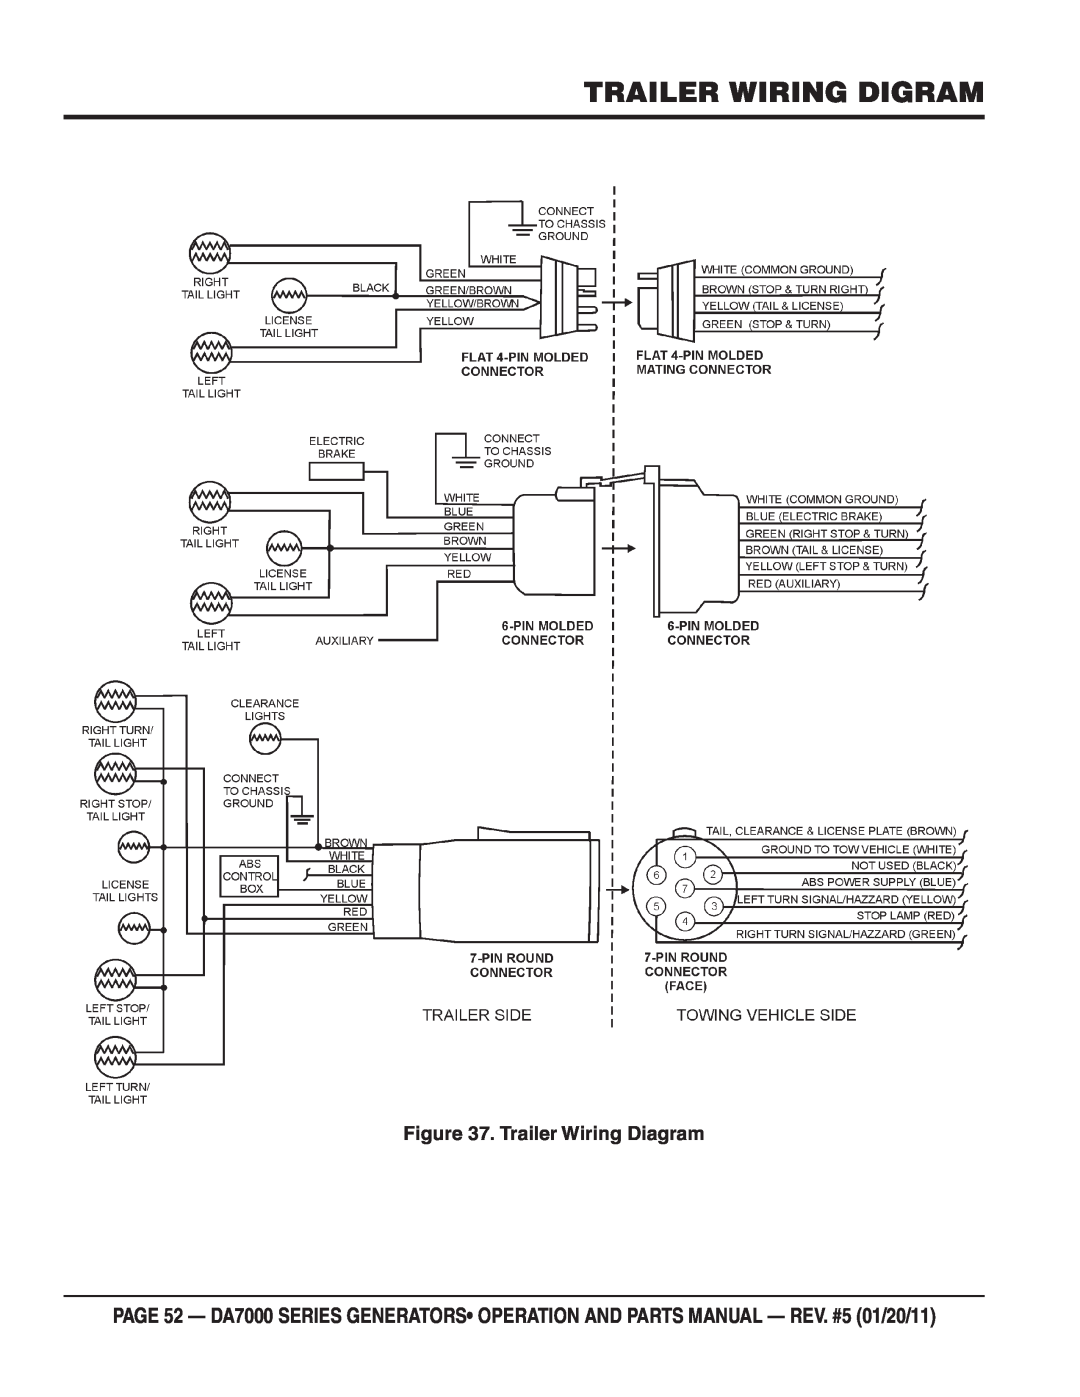 Multiquip DA7000WGH, DA700SSW manual Trailer Wiring Digram, Trailer Wiring Diagram 